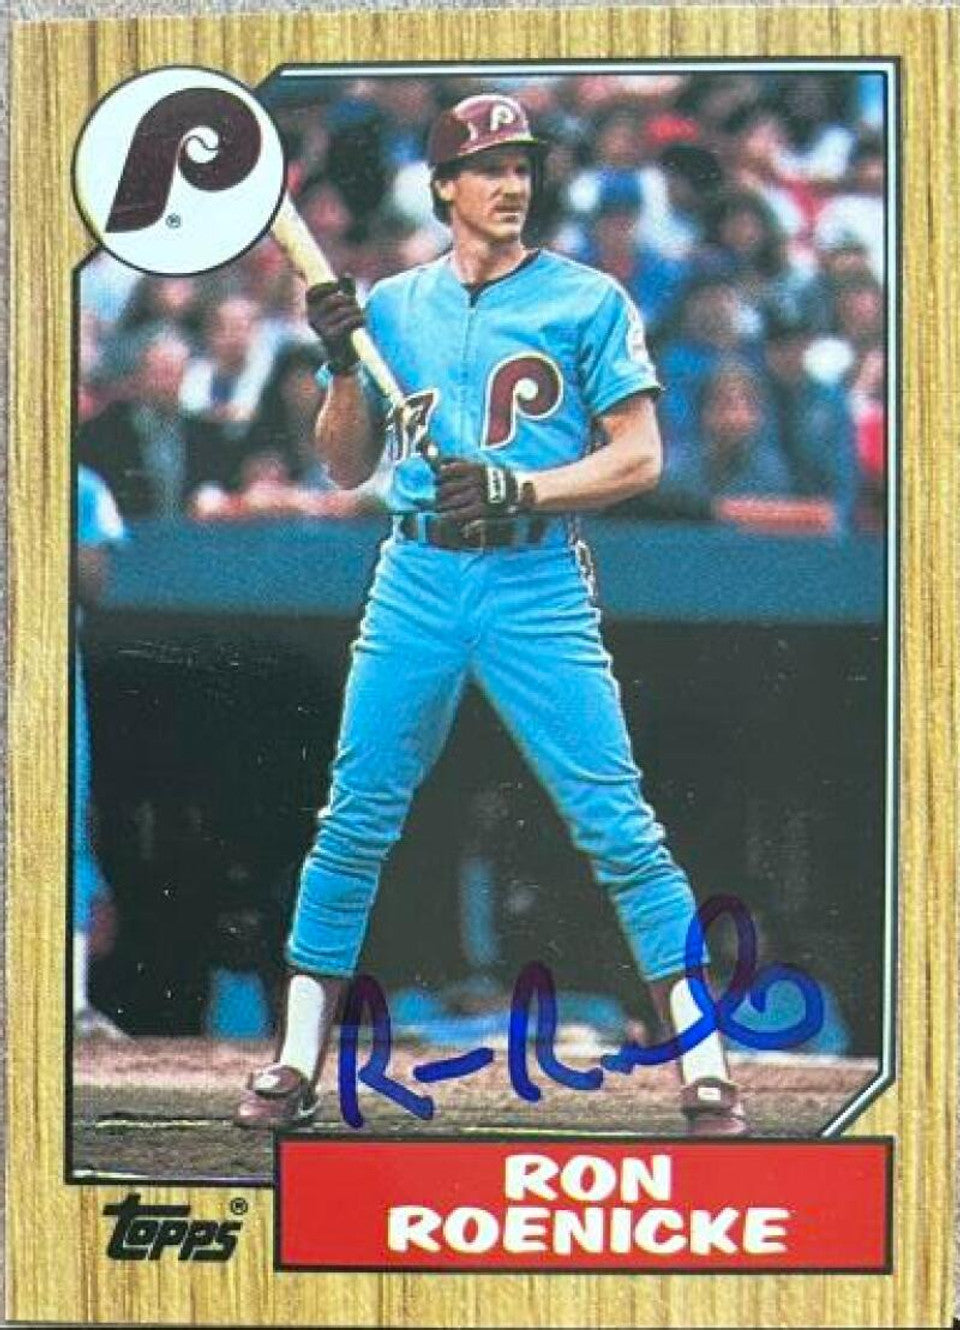 Ron Roenicke Signed 1987 Topps Baseball Card - Philadelphia Phillies